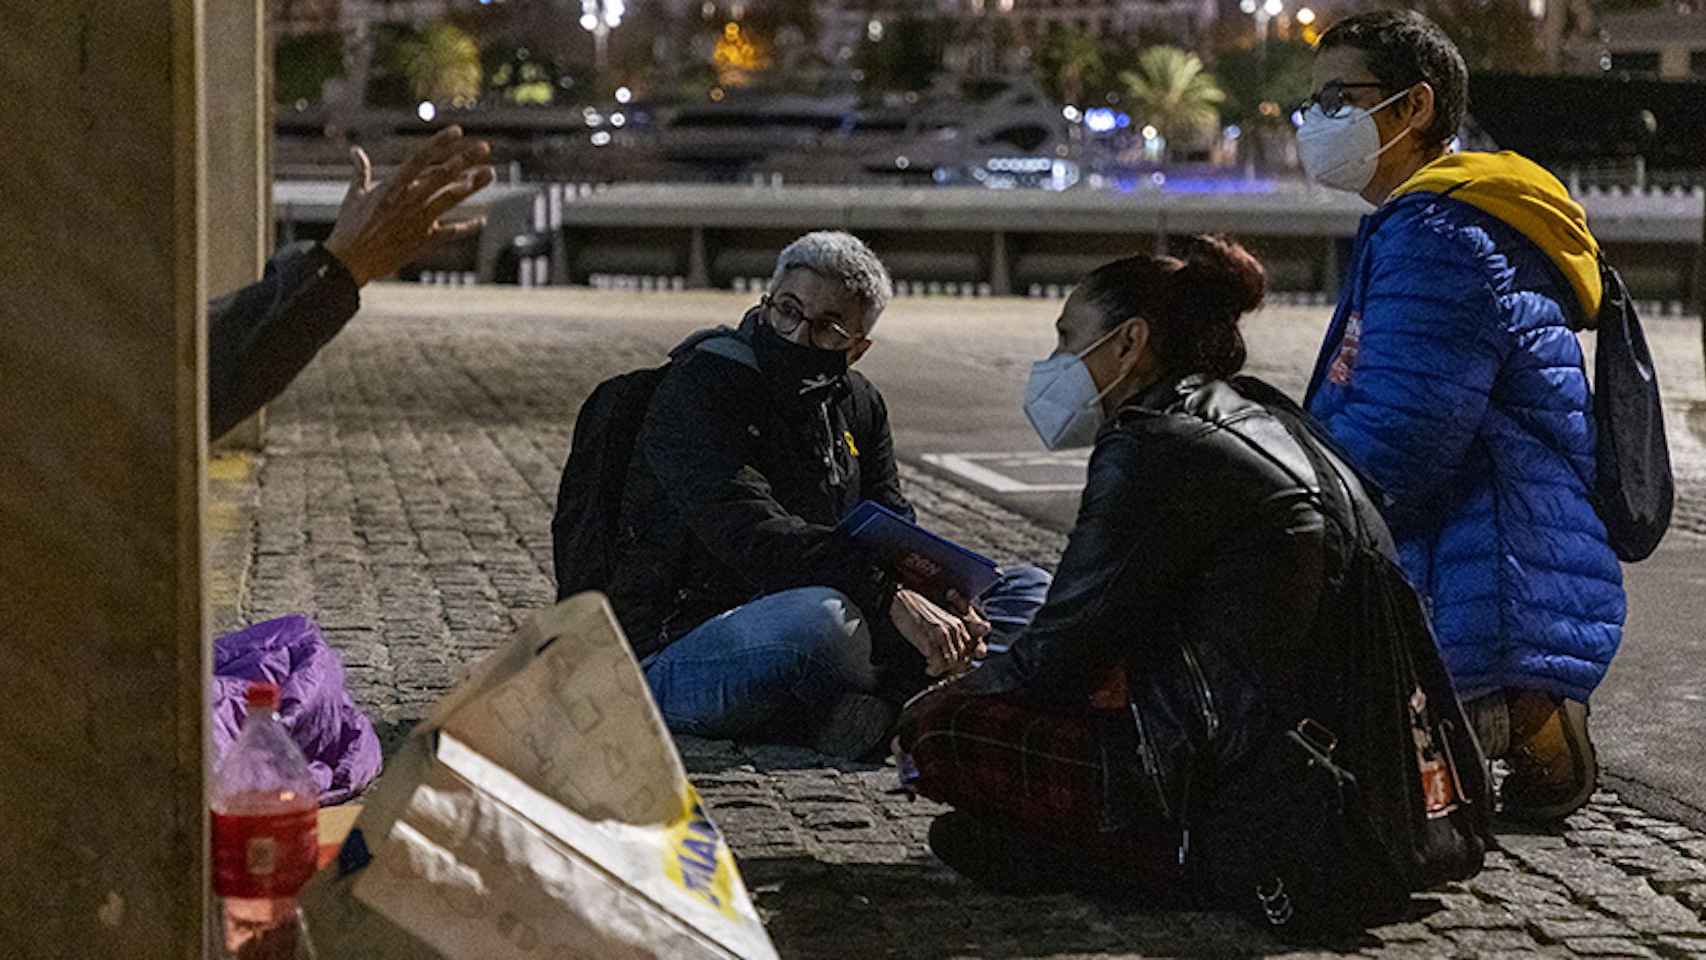 Voluntarios de Arrels atienden a una persona sintecho en Barcelona / ARRELS